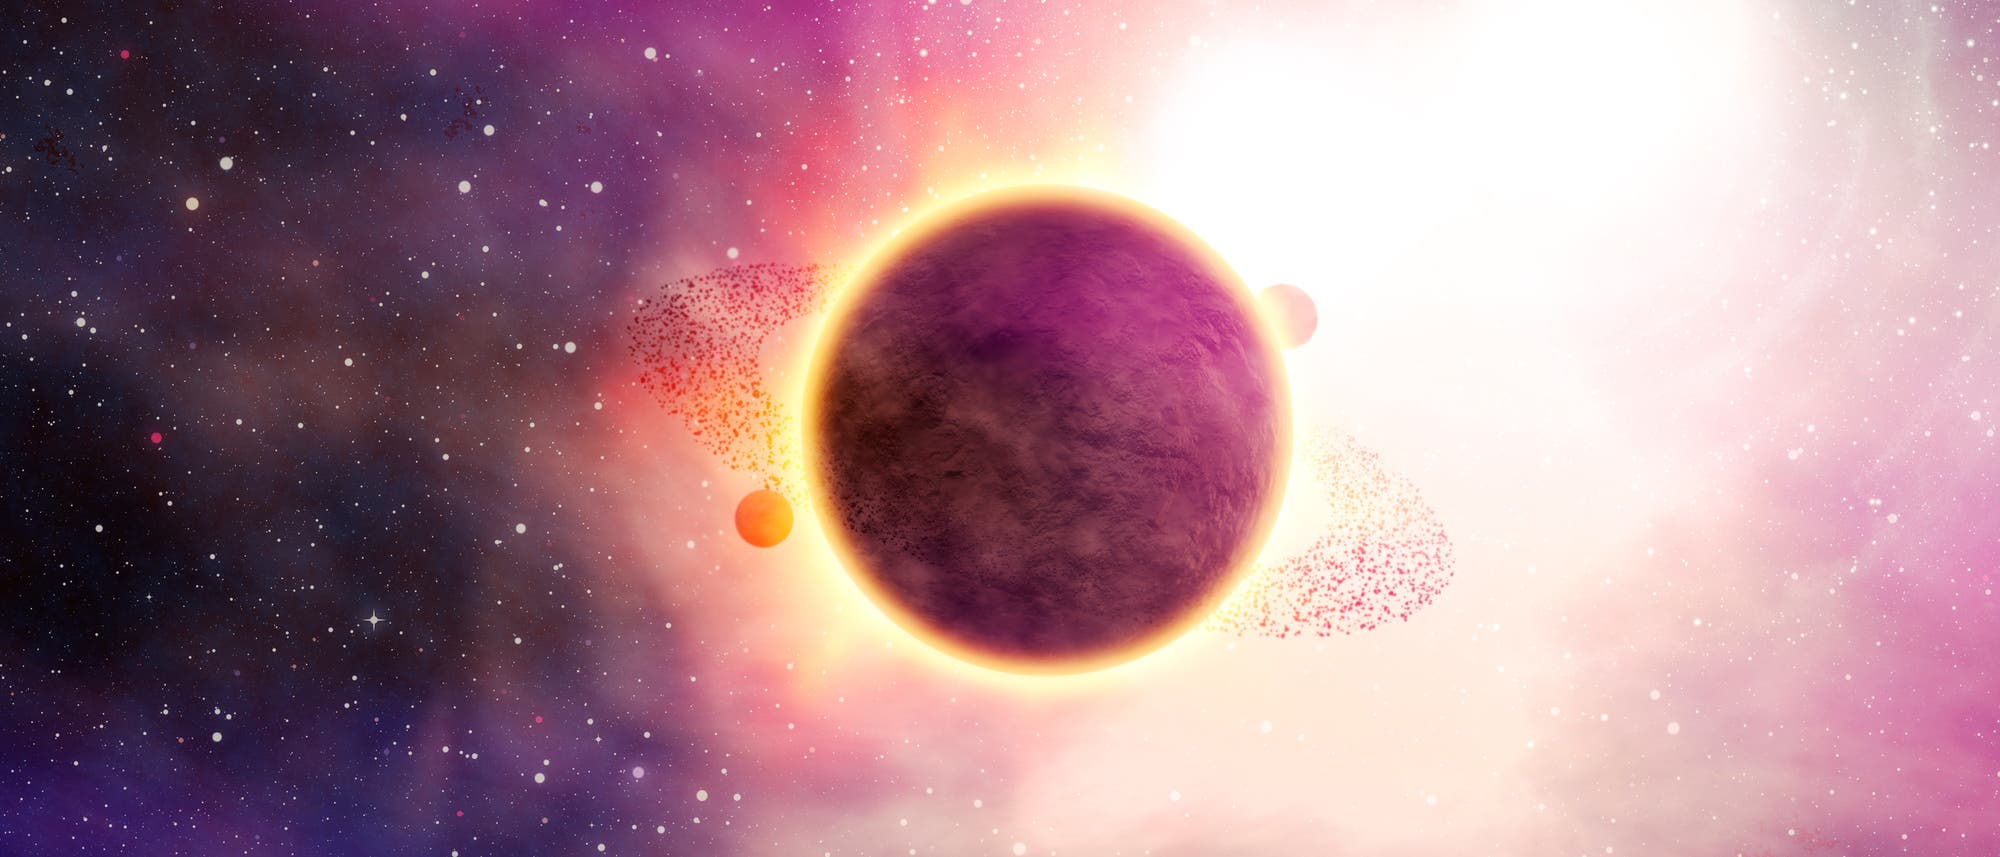 Künstlerische Darstellung eines Exoplaneten vor einem Stern